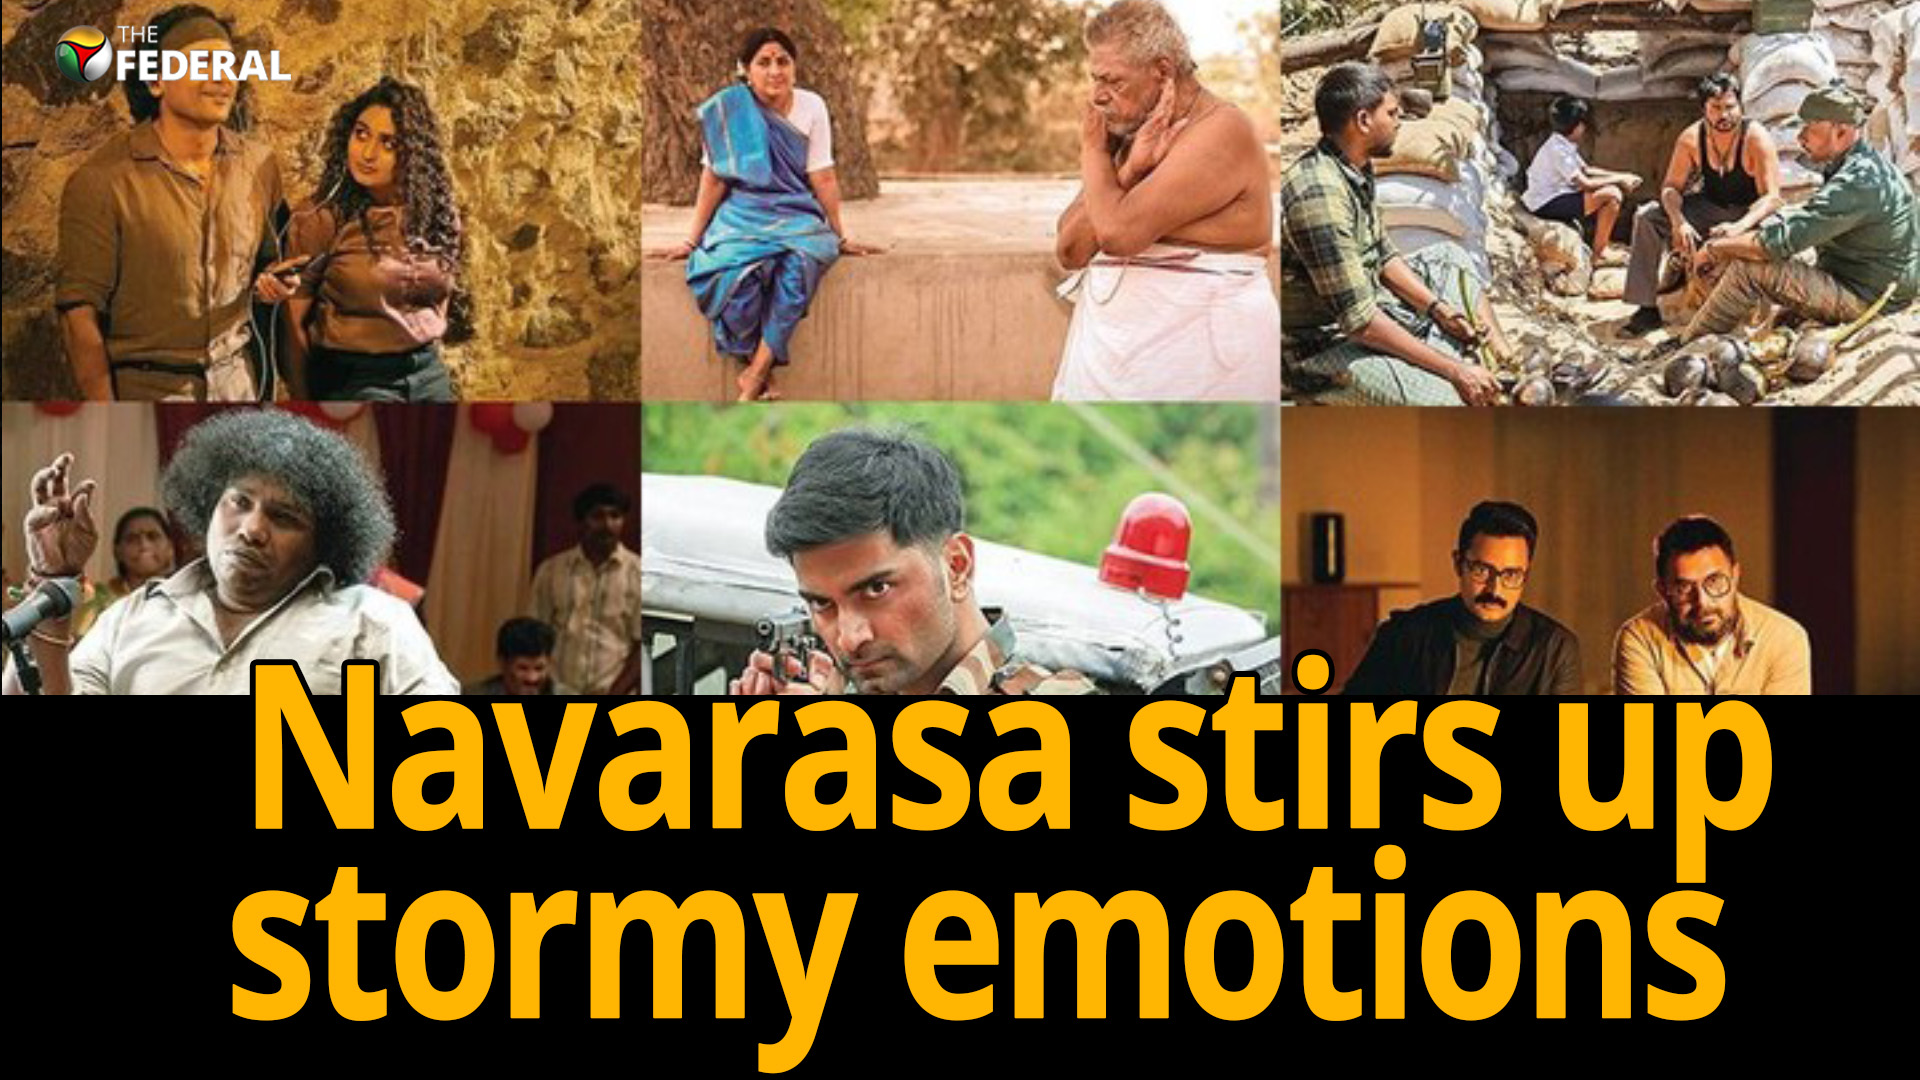 Navarasa is offensive, an upper-caste gaze